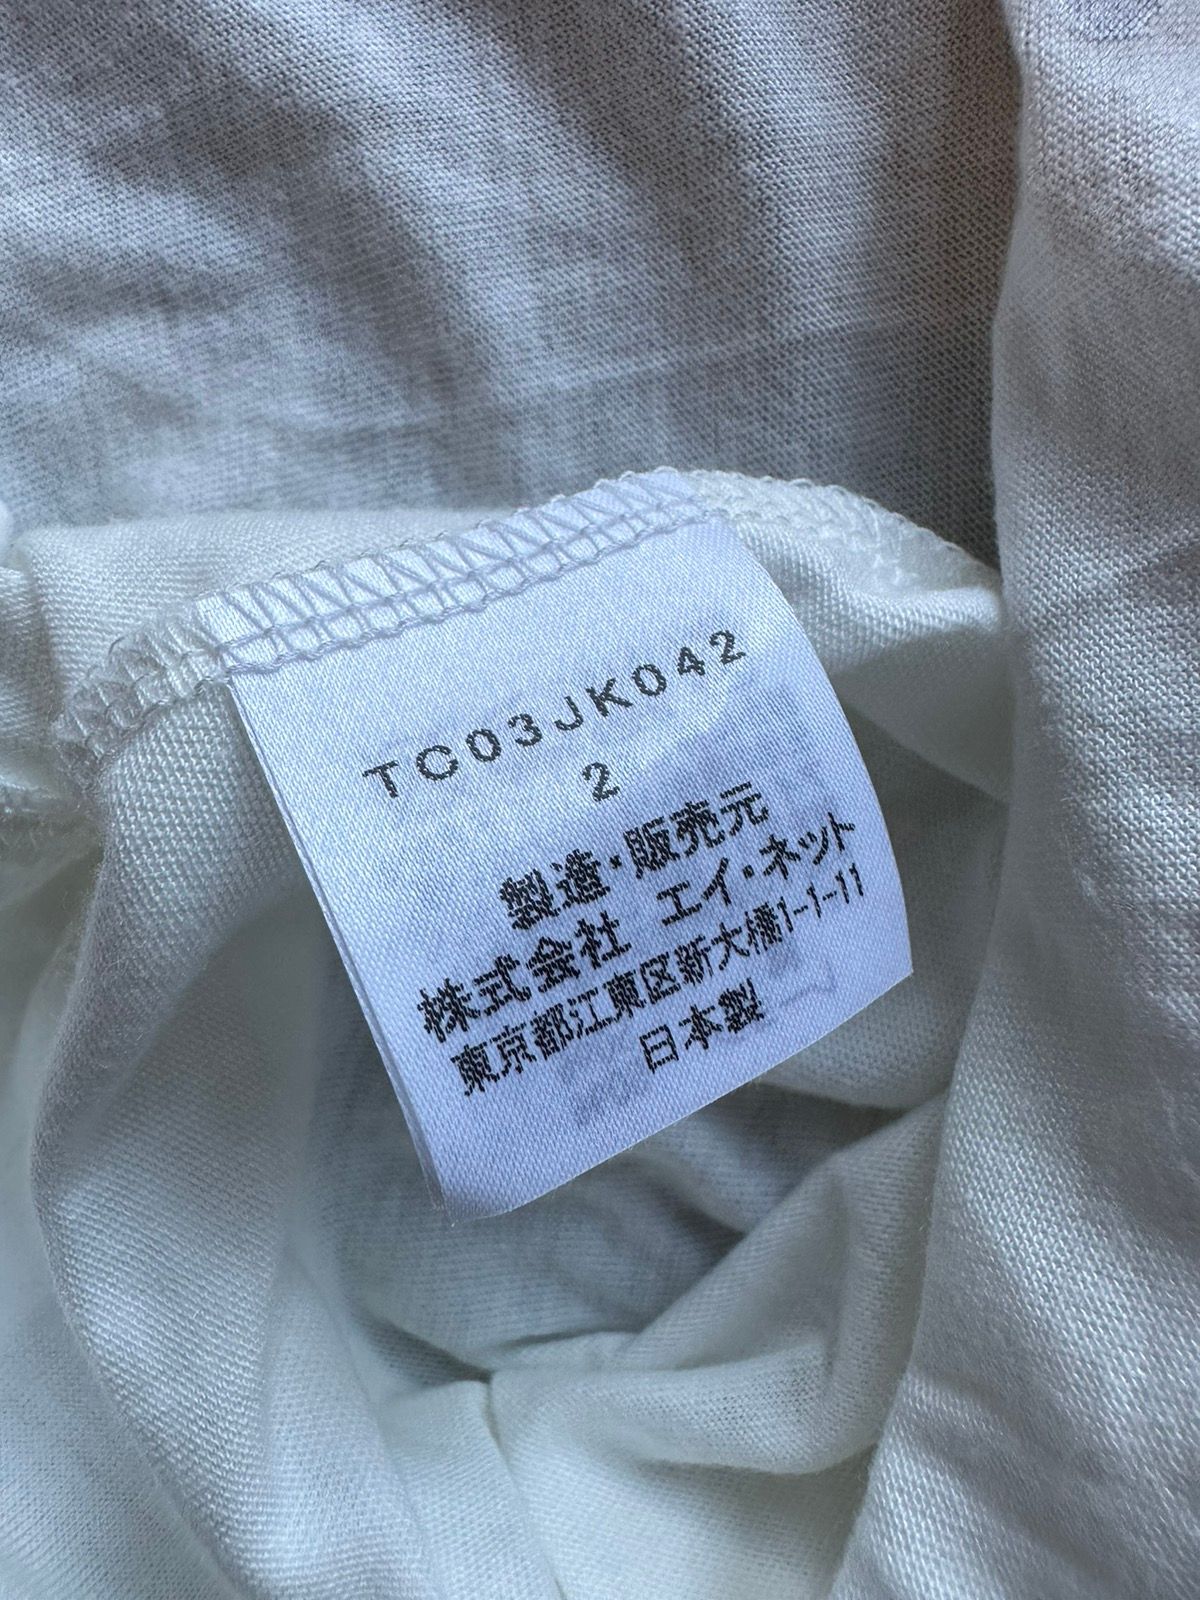 Vintage Vintage Tsumori Chisato Issey Miyake vintage knitted shirt Size US M / EU 48-50 / 2 - 12 Thumbnail